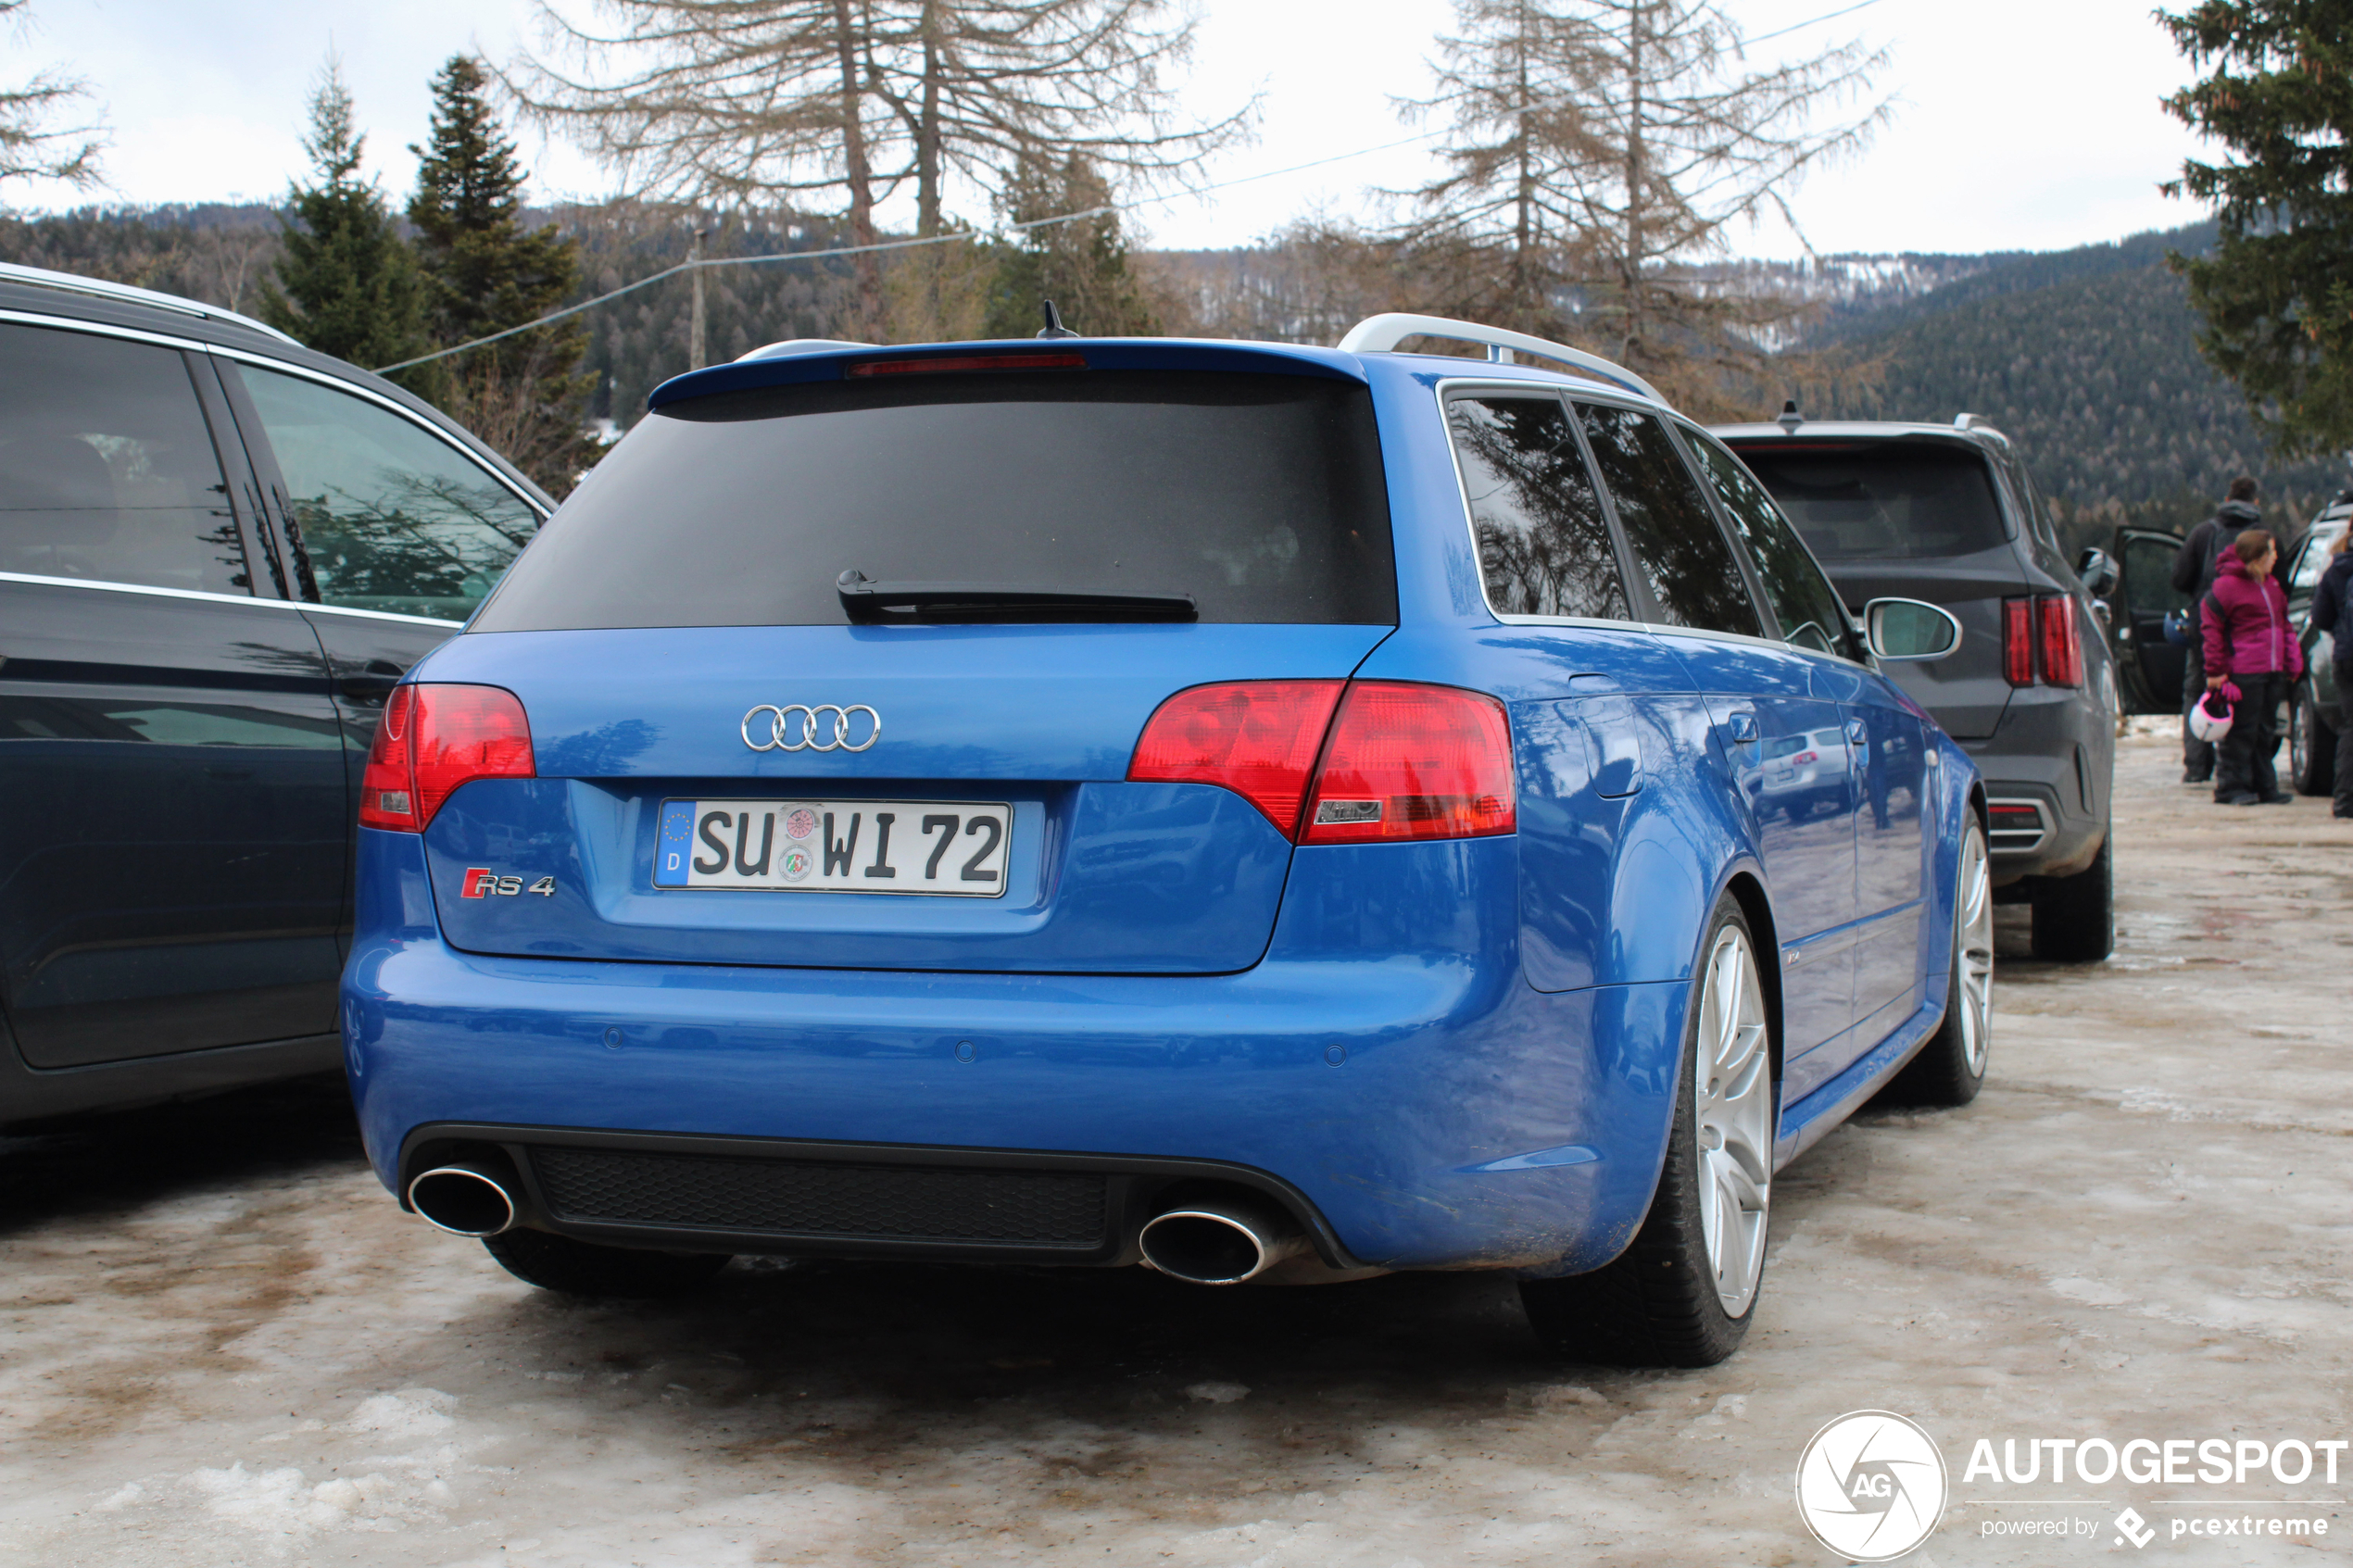 Blauwe RS4 is heerlijk wintersport vervoer